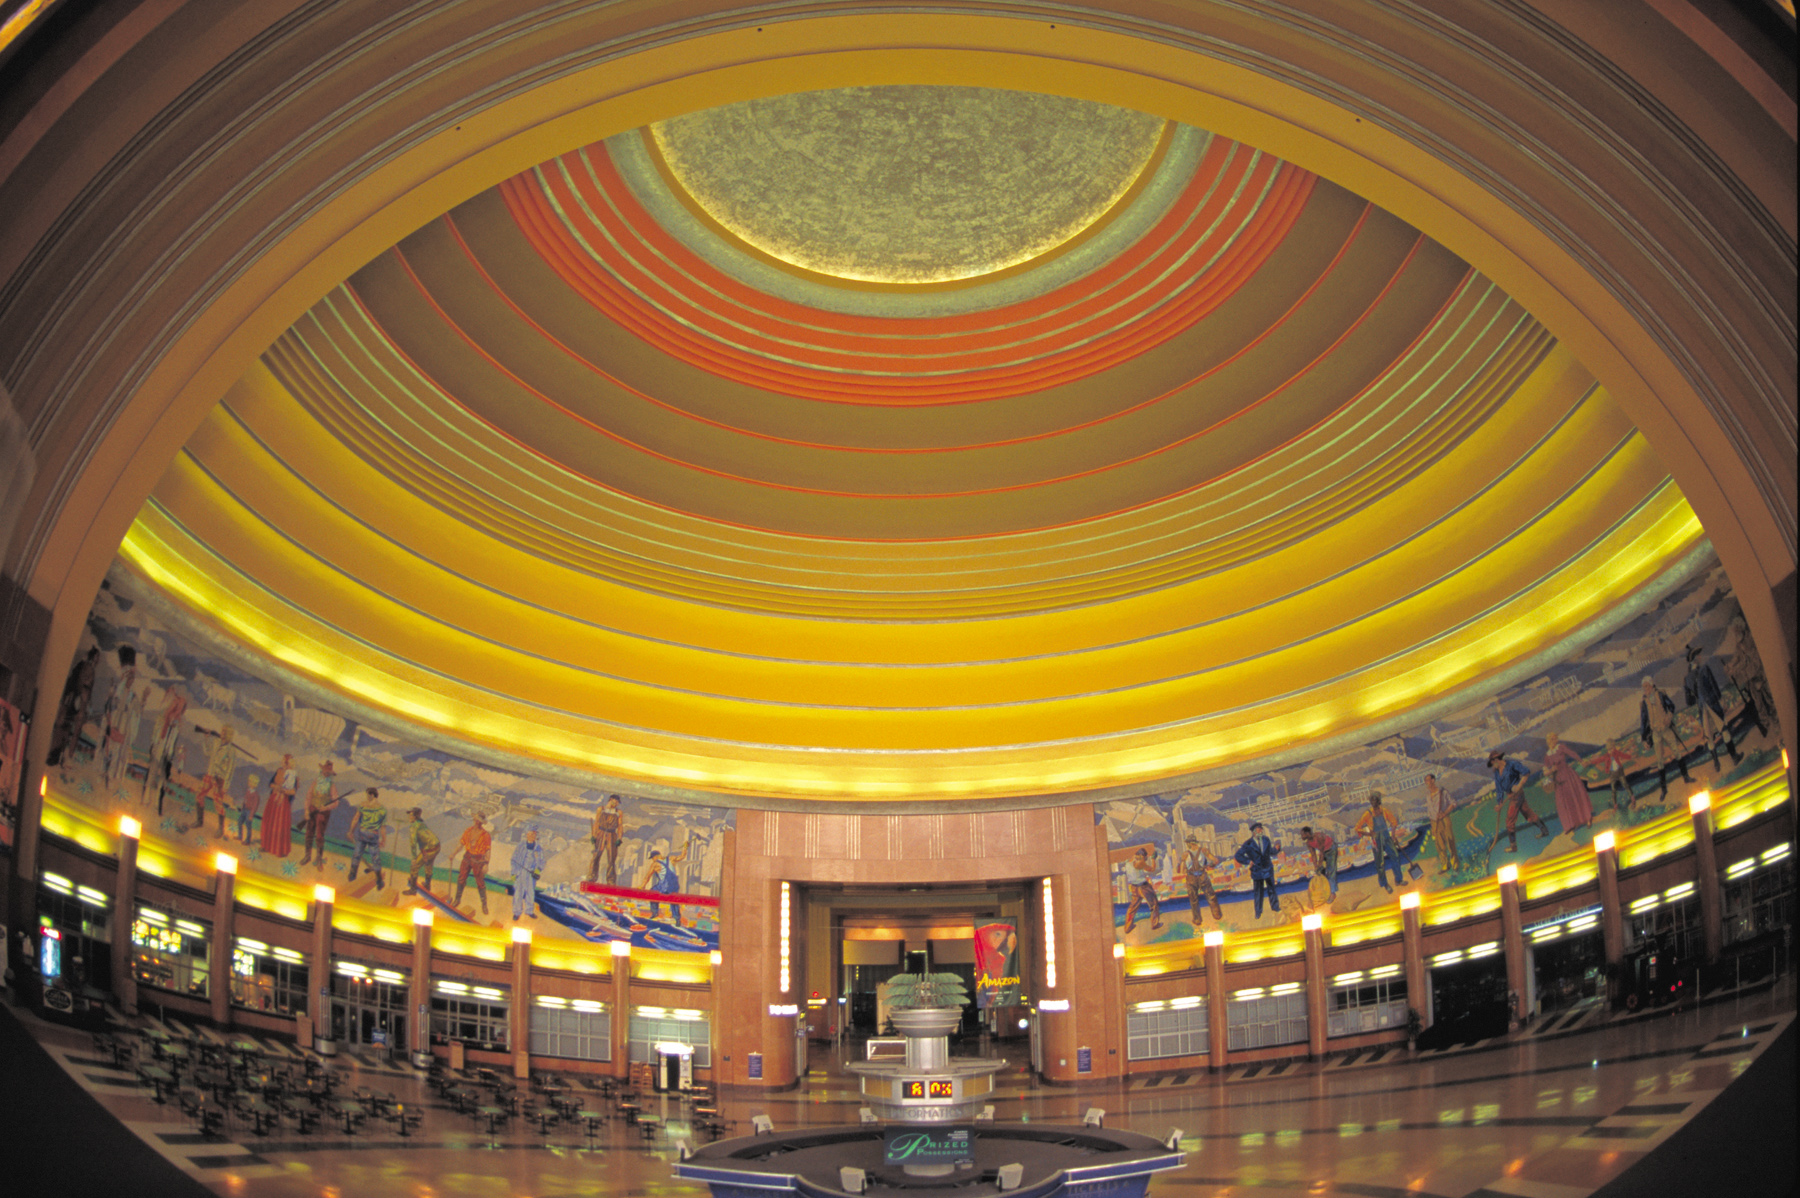 Cincinnati Museum Center rotunda interior